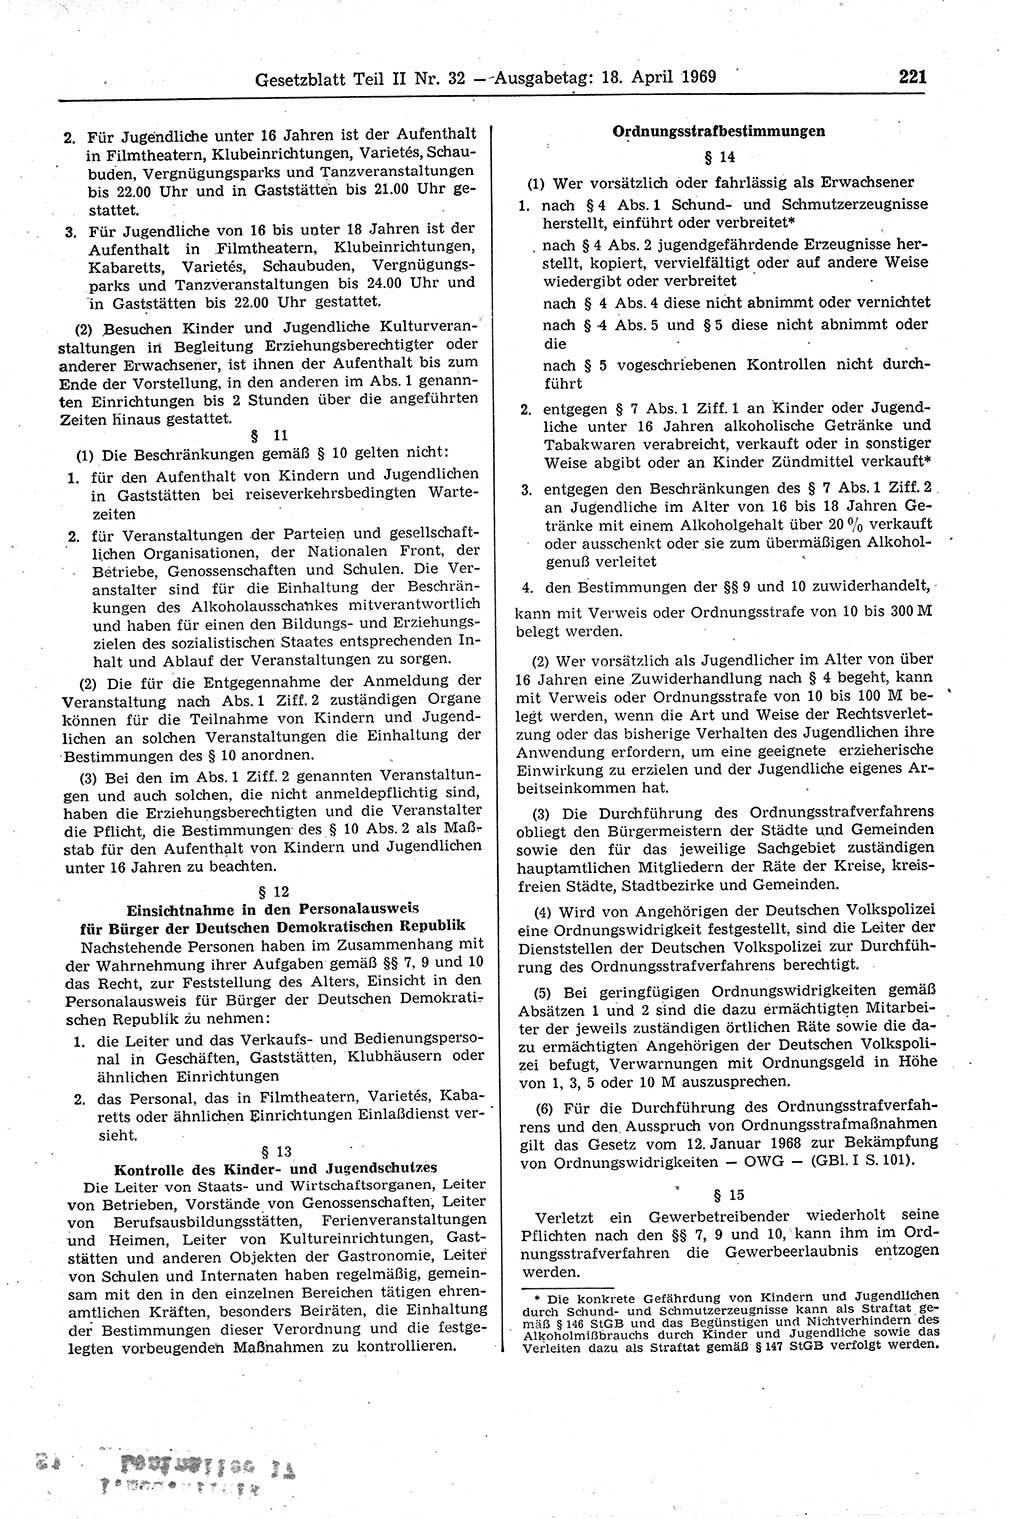 Gesetzblatt (GBl.) der Deutschen Demokratischen Republik (DDR) Teil ⅠⅠ 1969, Seite 221 (GBl. DDR ⅠⅠ 1969, S. 221)